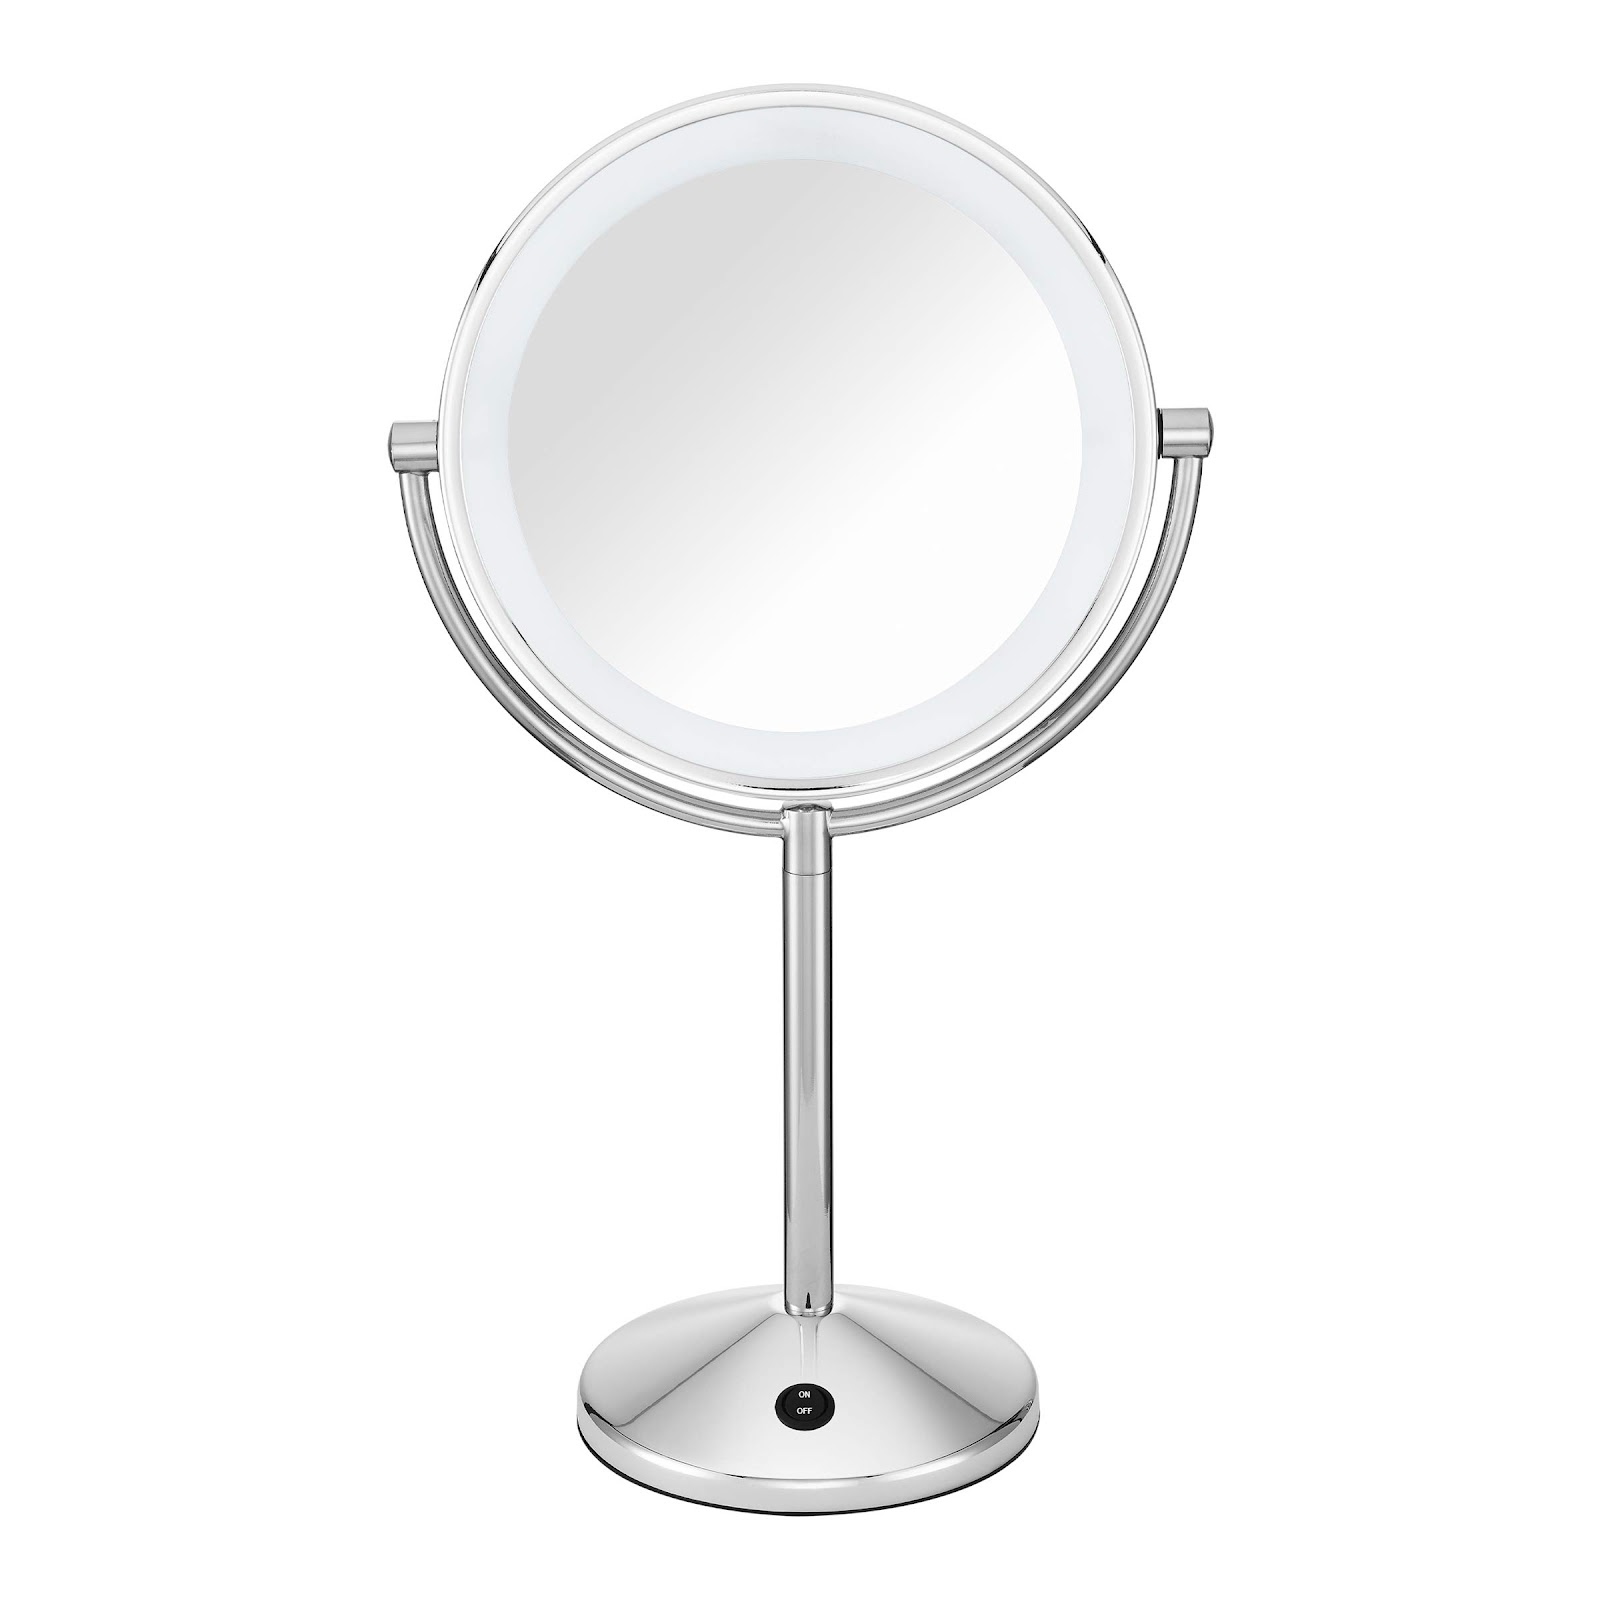 Conair Espelho de maquiagem refletions de dupla face com iluminação de LED, ampliação de 1x/10x, acabamento cromado polido